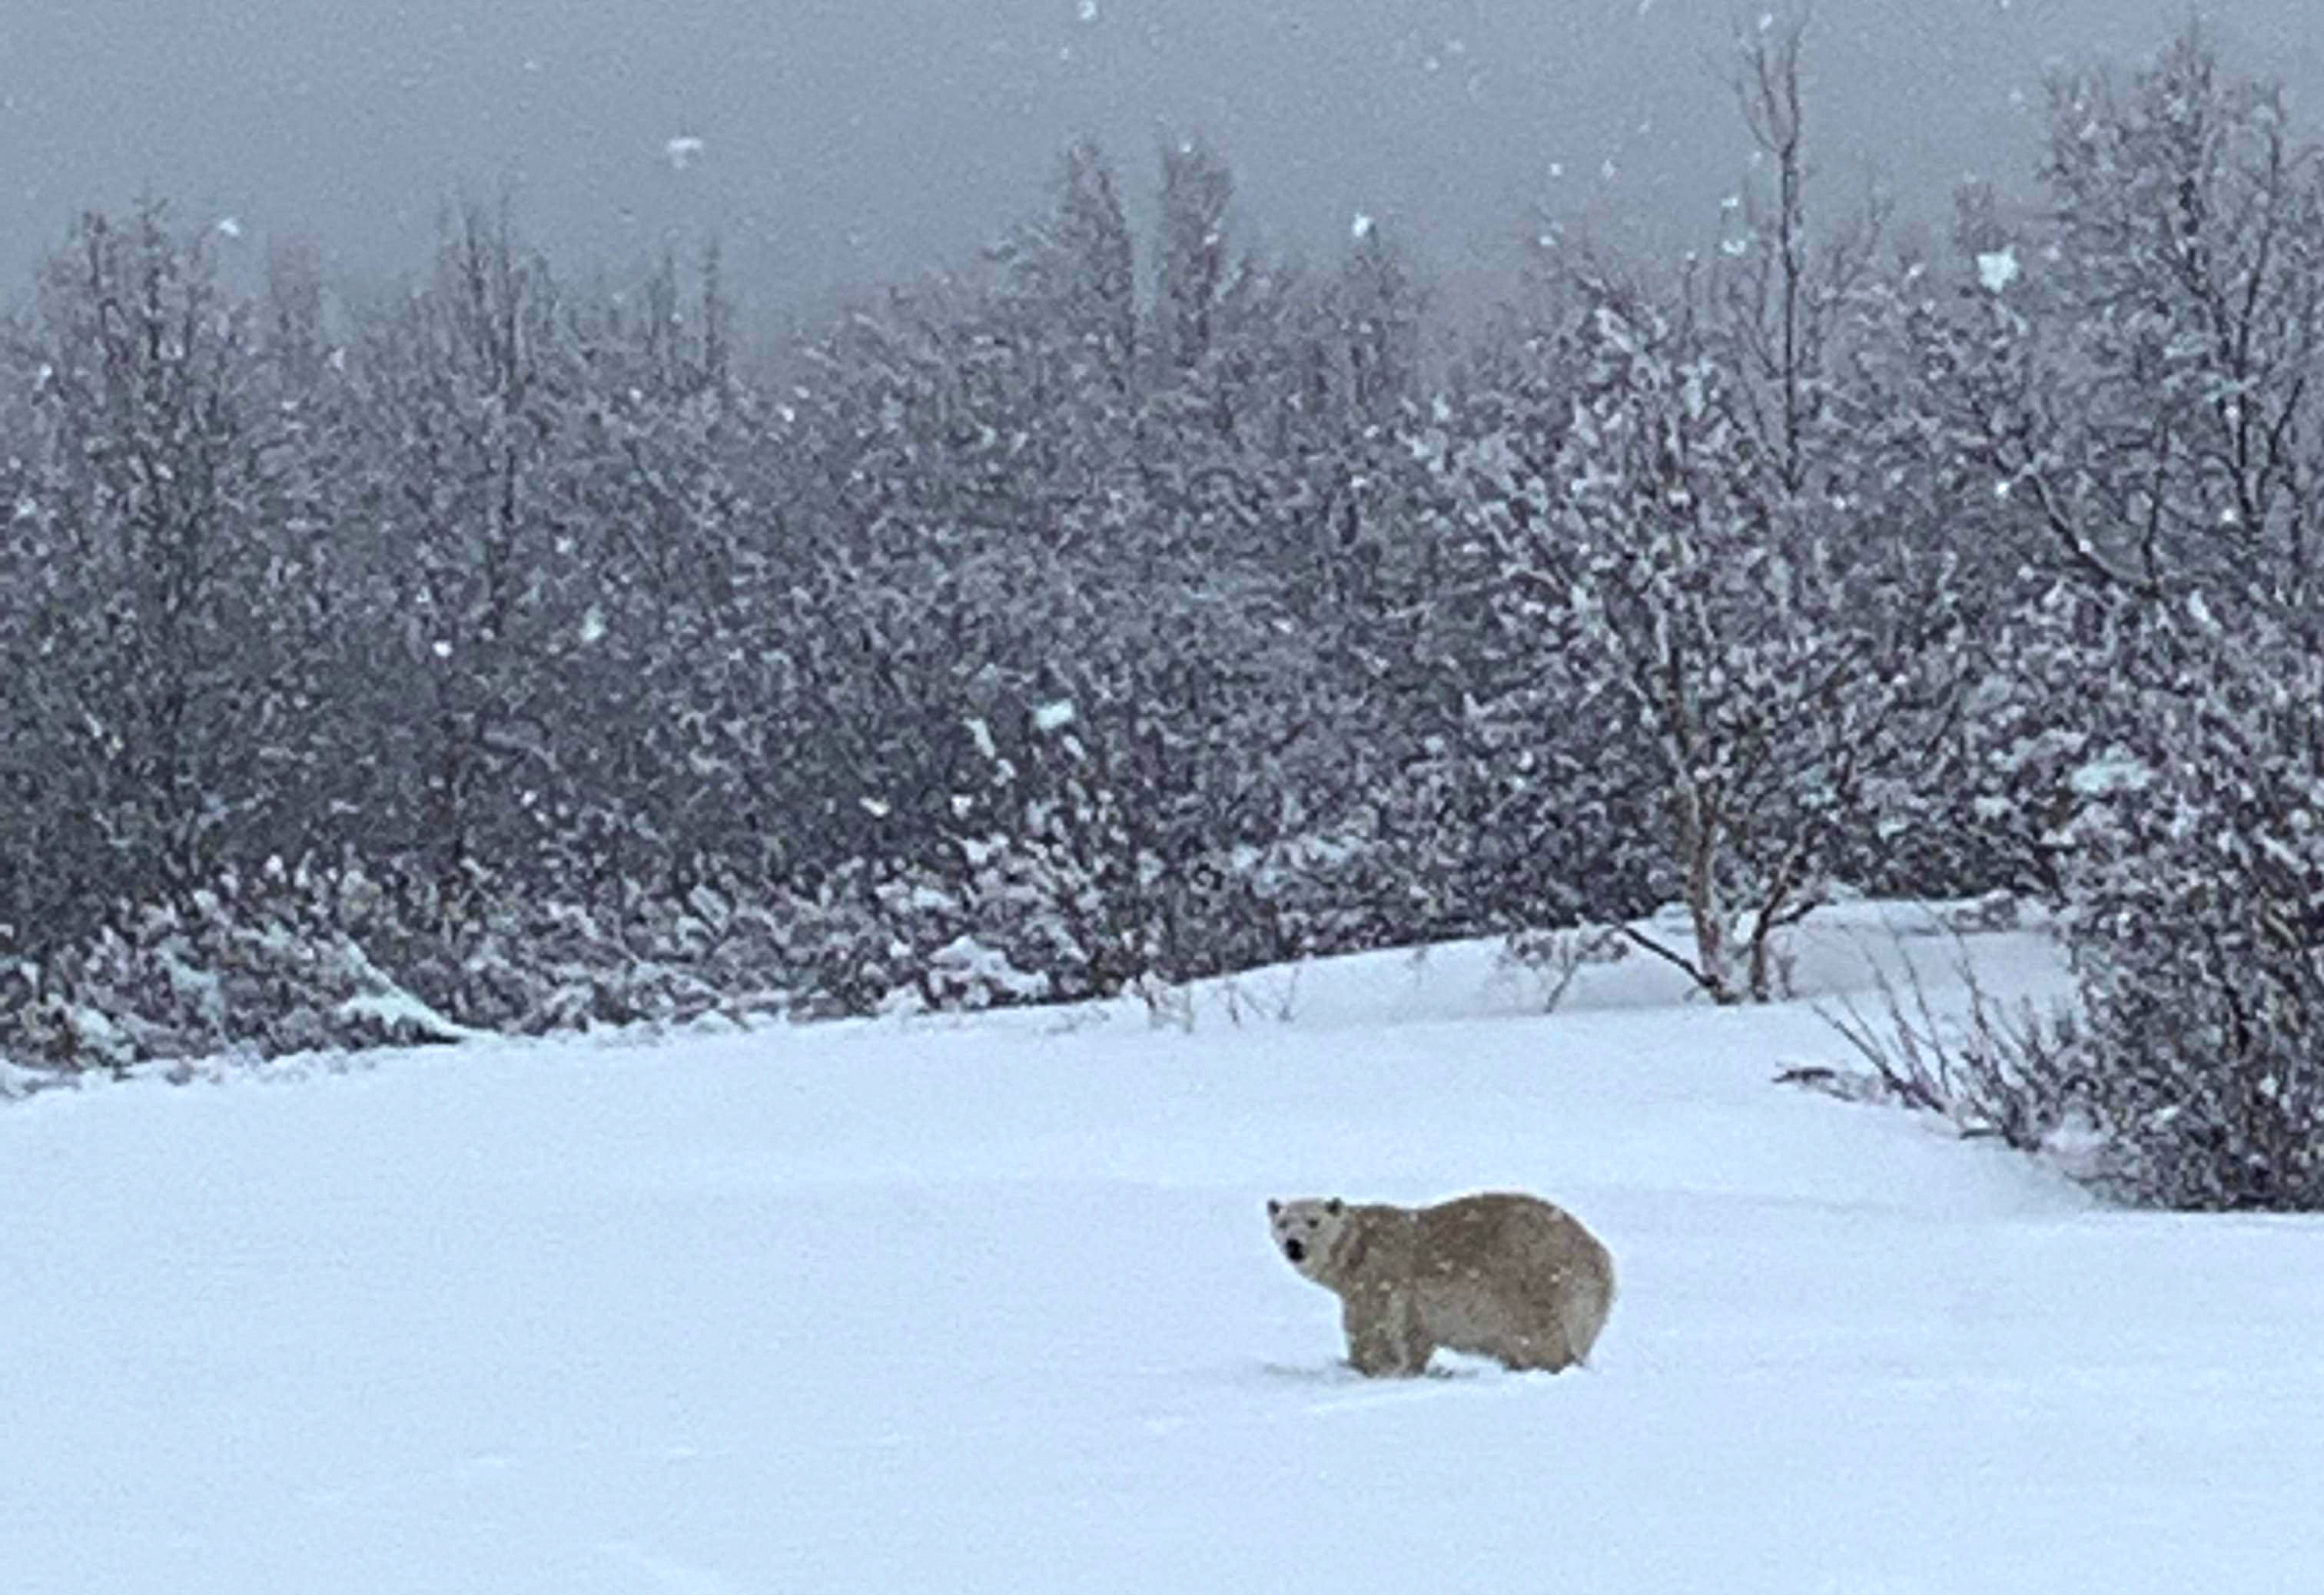 Jegesmedvét észleltek szombaton Quebec egyik régiójában, a St. Lawrence folyótól délre. A vadvédelmi tisztek és a rendőrség riasztották a Montrealtól több mint 800 kilométerre keletre fekvő Gaspé-félszigeten lévő Madeline-Centre lakóit a szokatlan látogató miatt.